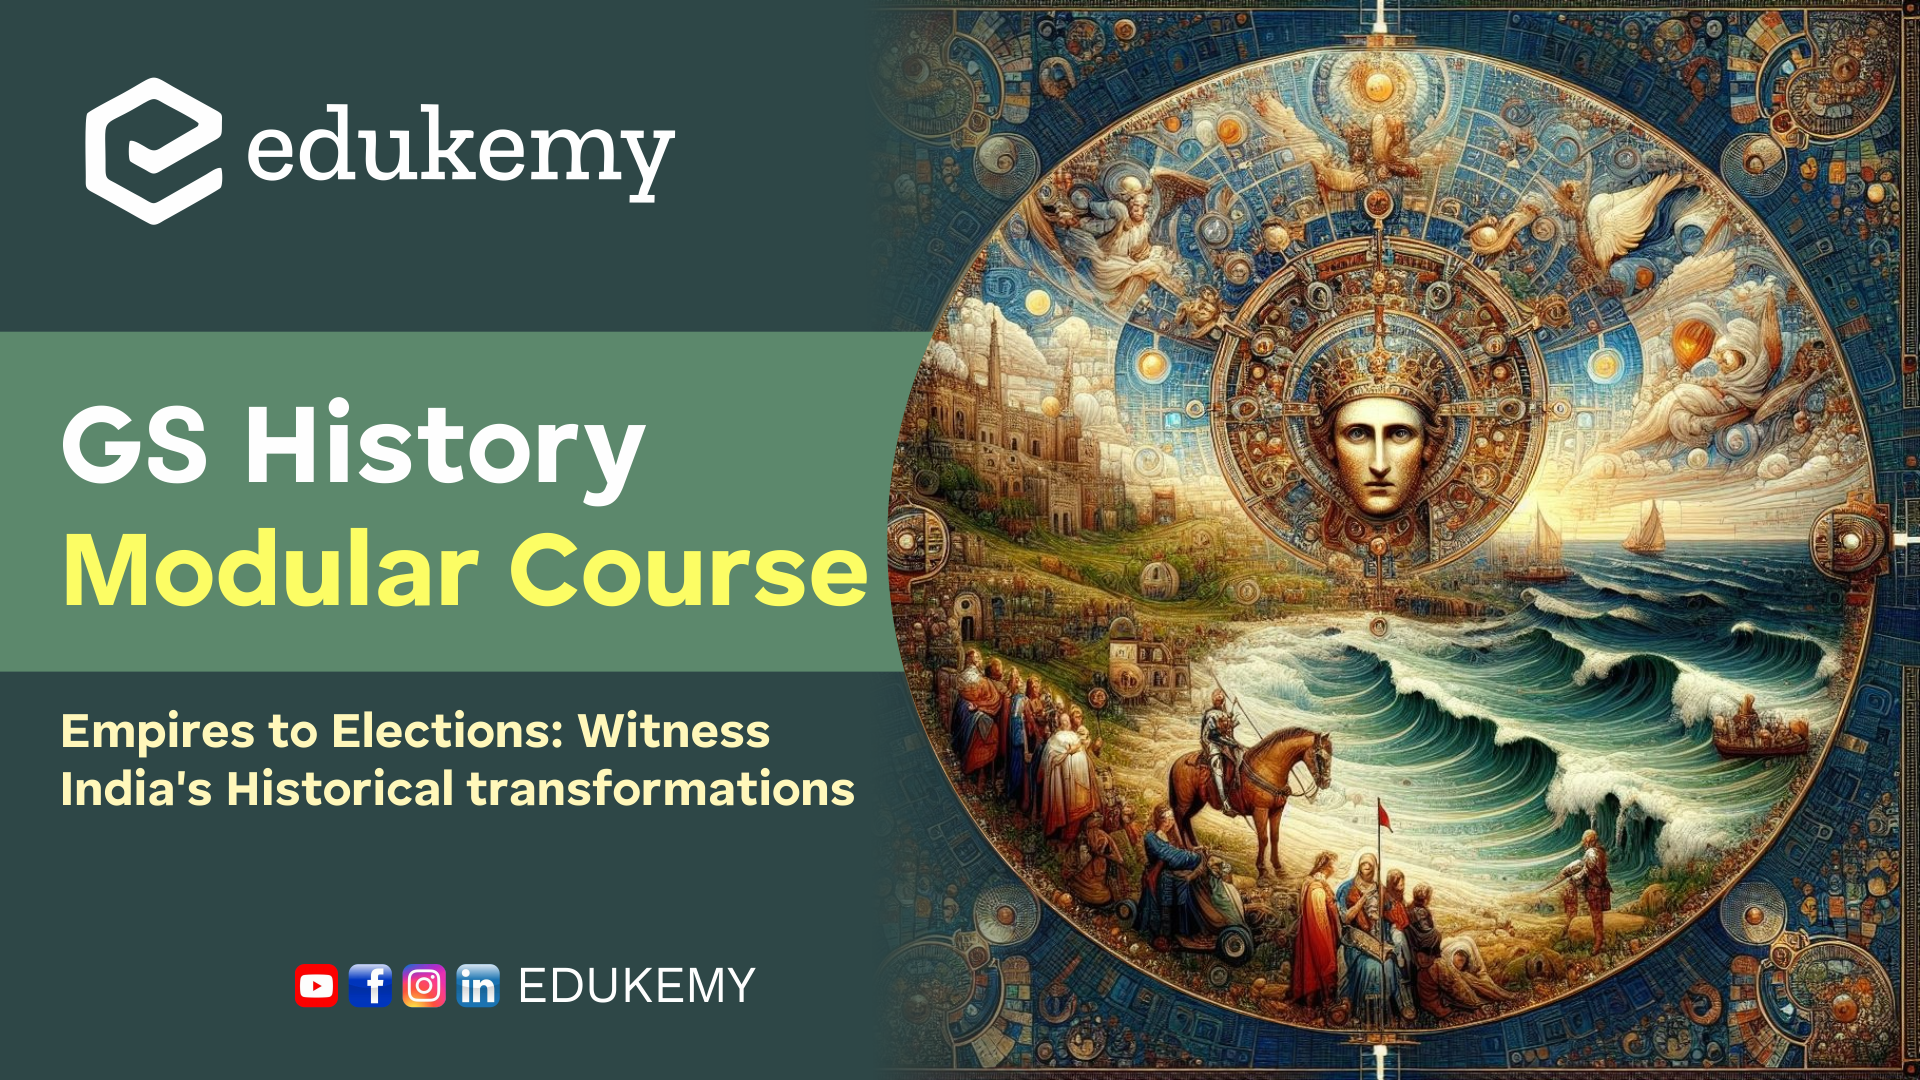 GS History Modular Course